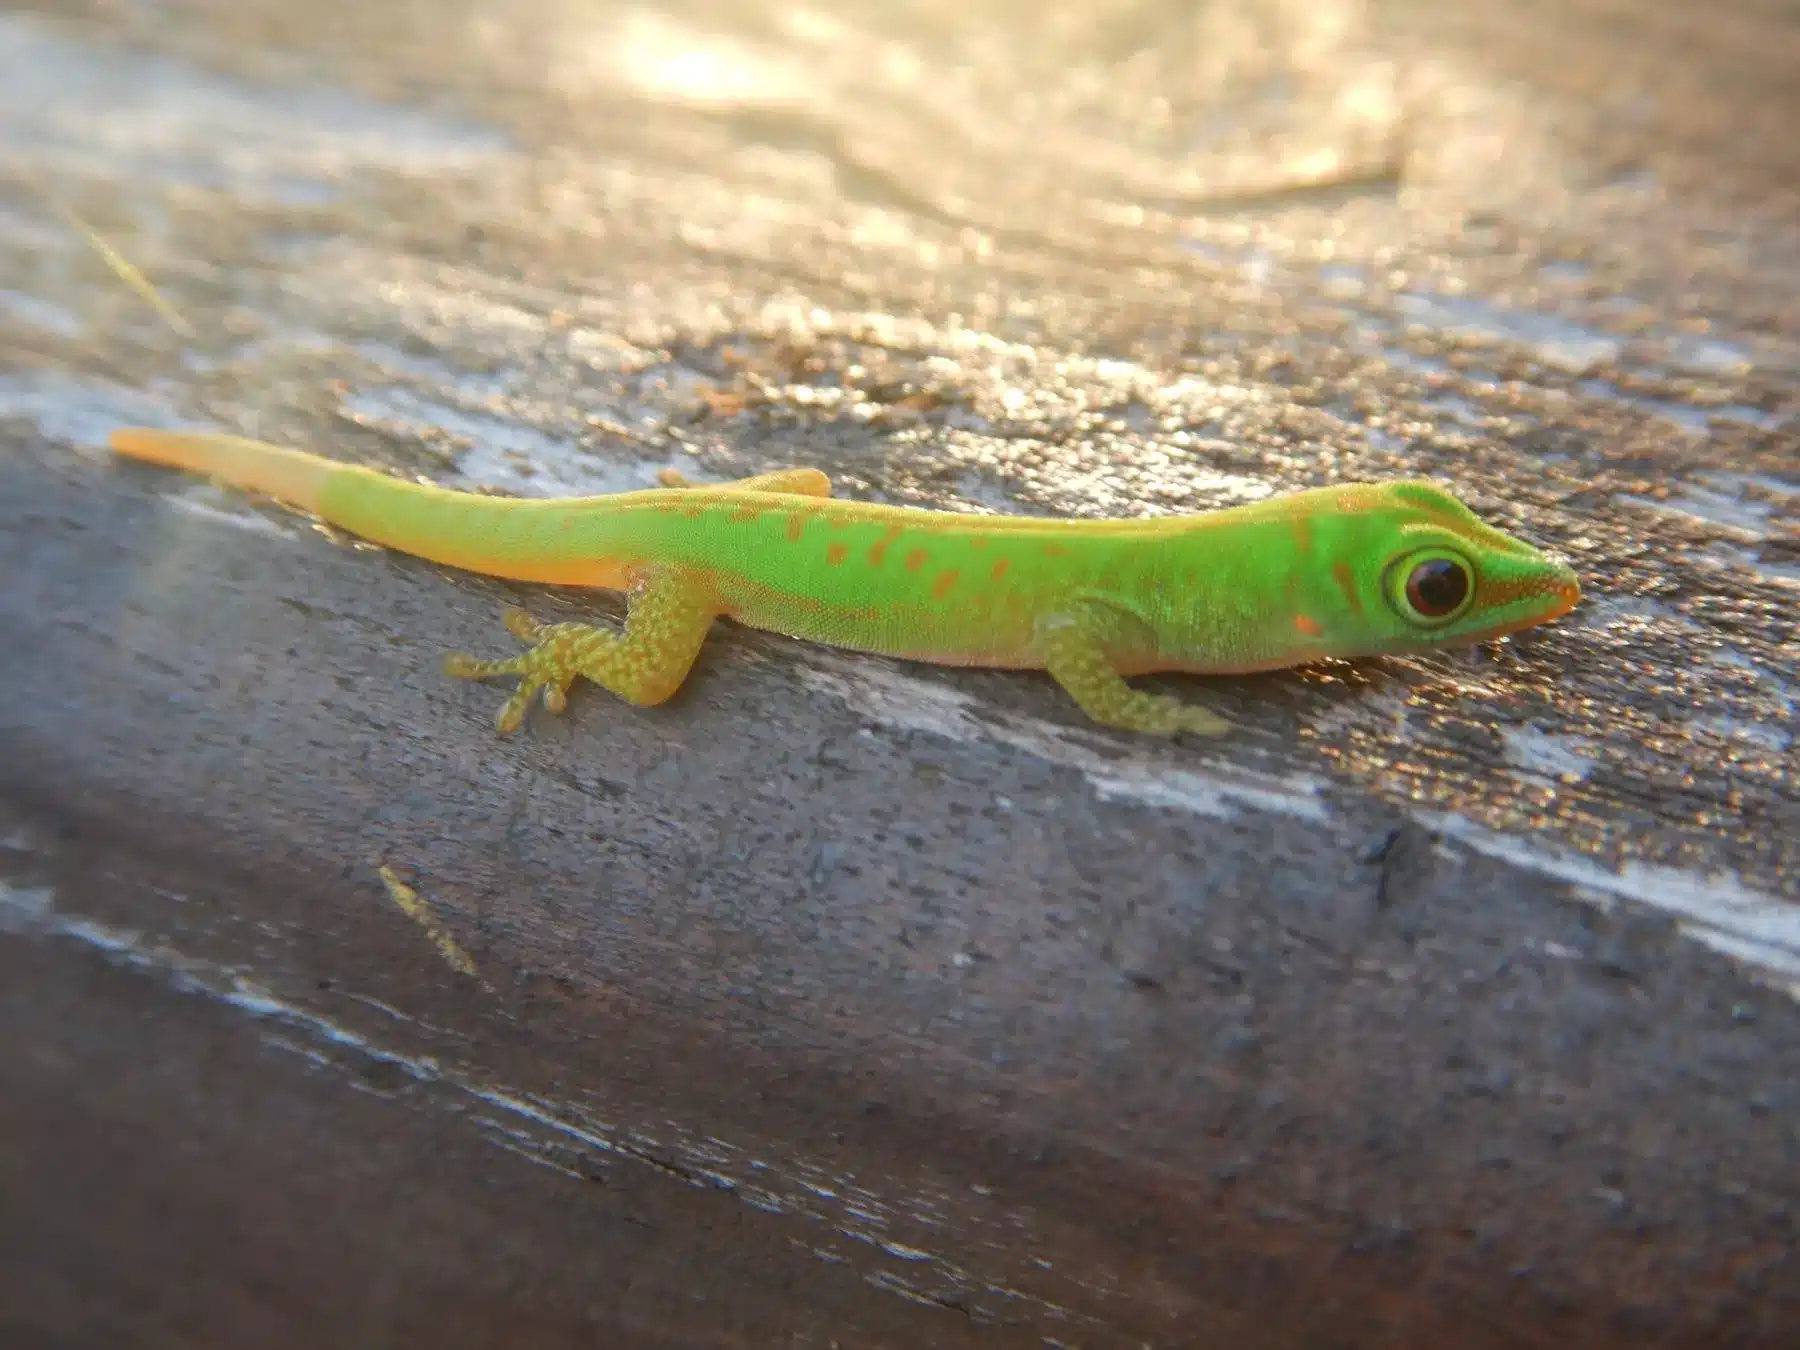 Ein leuchtend grüner und gelber Gecko mit großen, hellen Augen, der während eines Segeltörns auf einer strukturierten Holzoberfläche ruht und von sanftem Sonnenlicht beleuchtet wird.